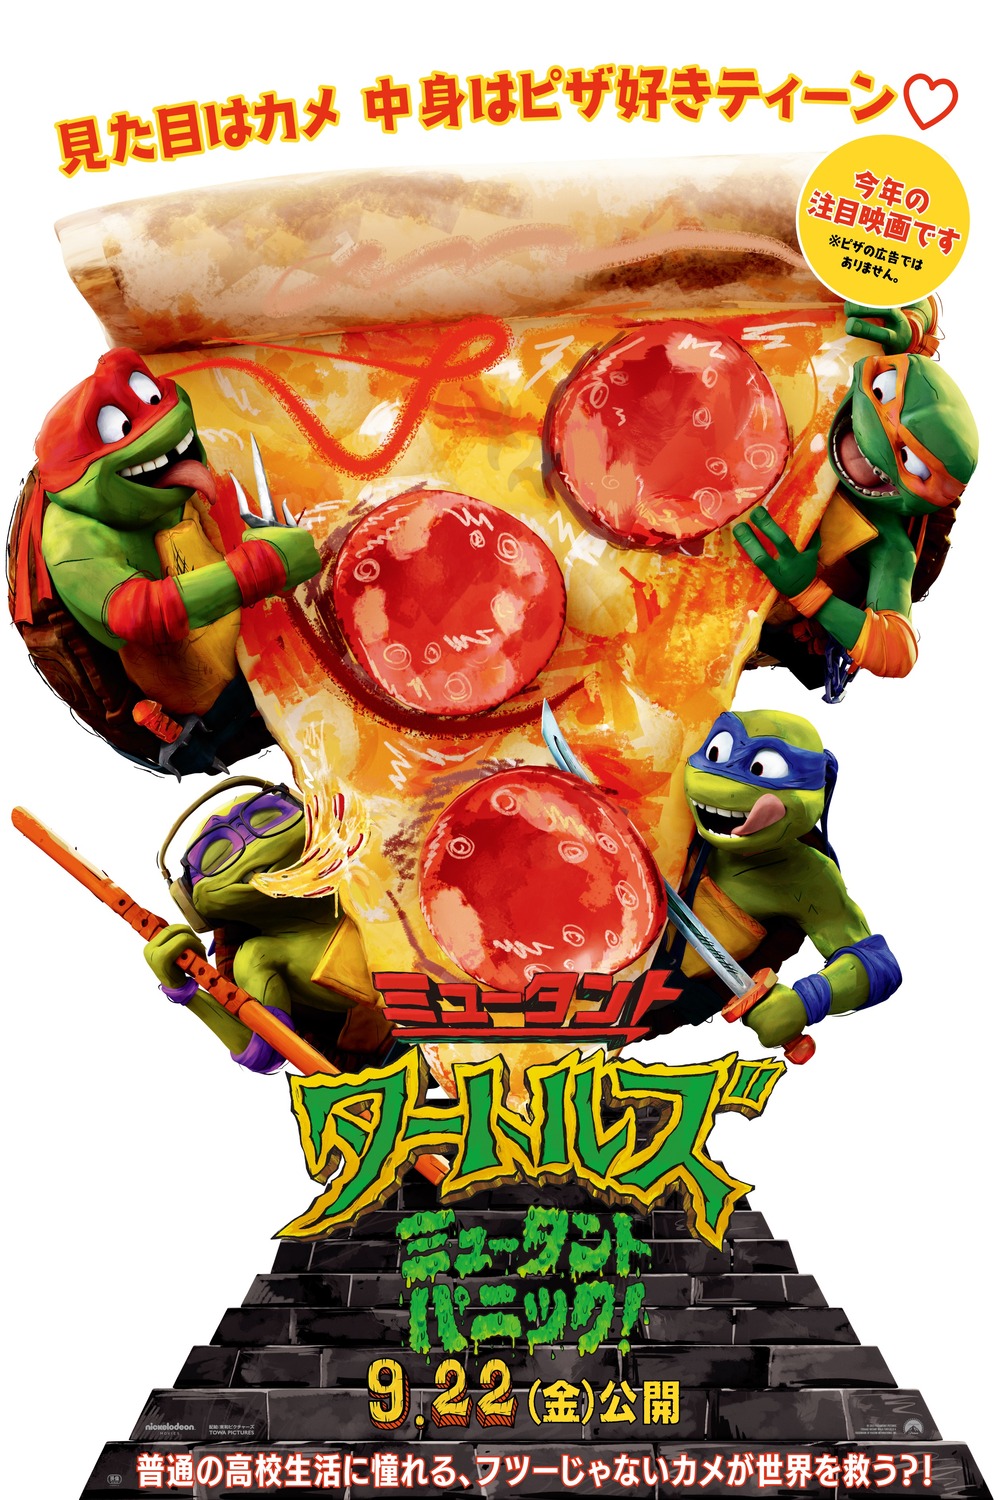 Teenage Mutant Ninja Turtles: Mutant Mayhem (#40 of 48): Extra Large Movie  Poster Image - IMP Awards